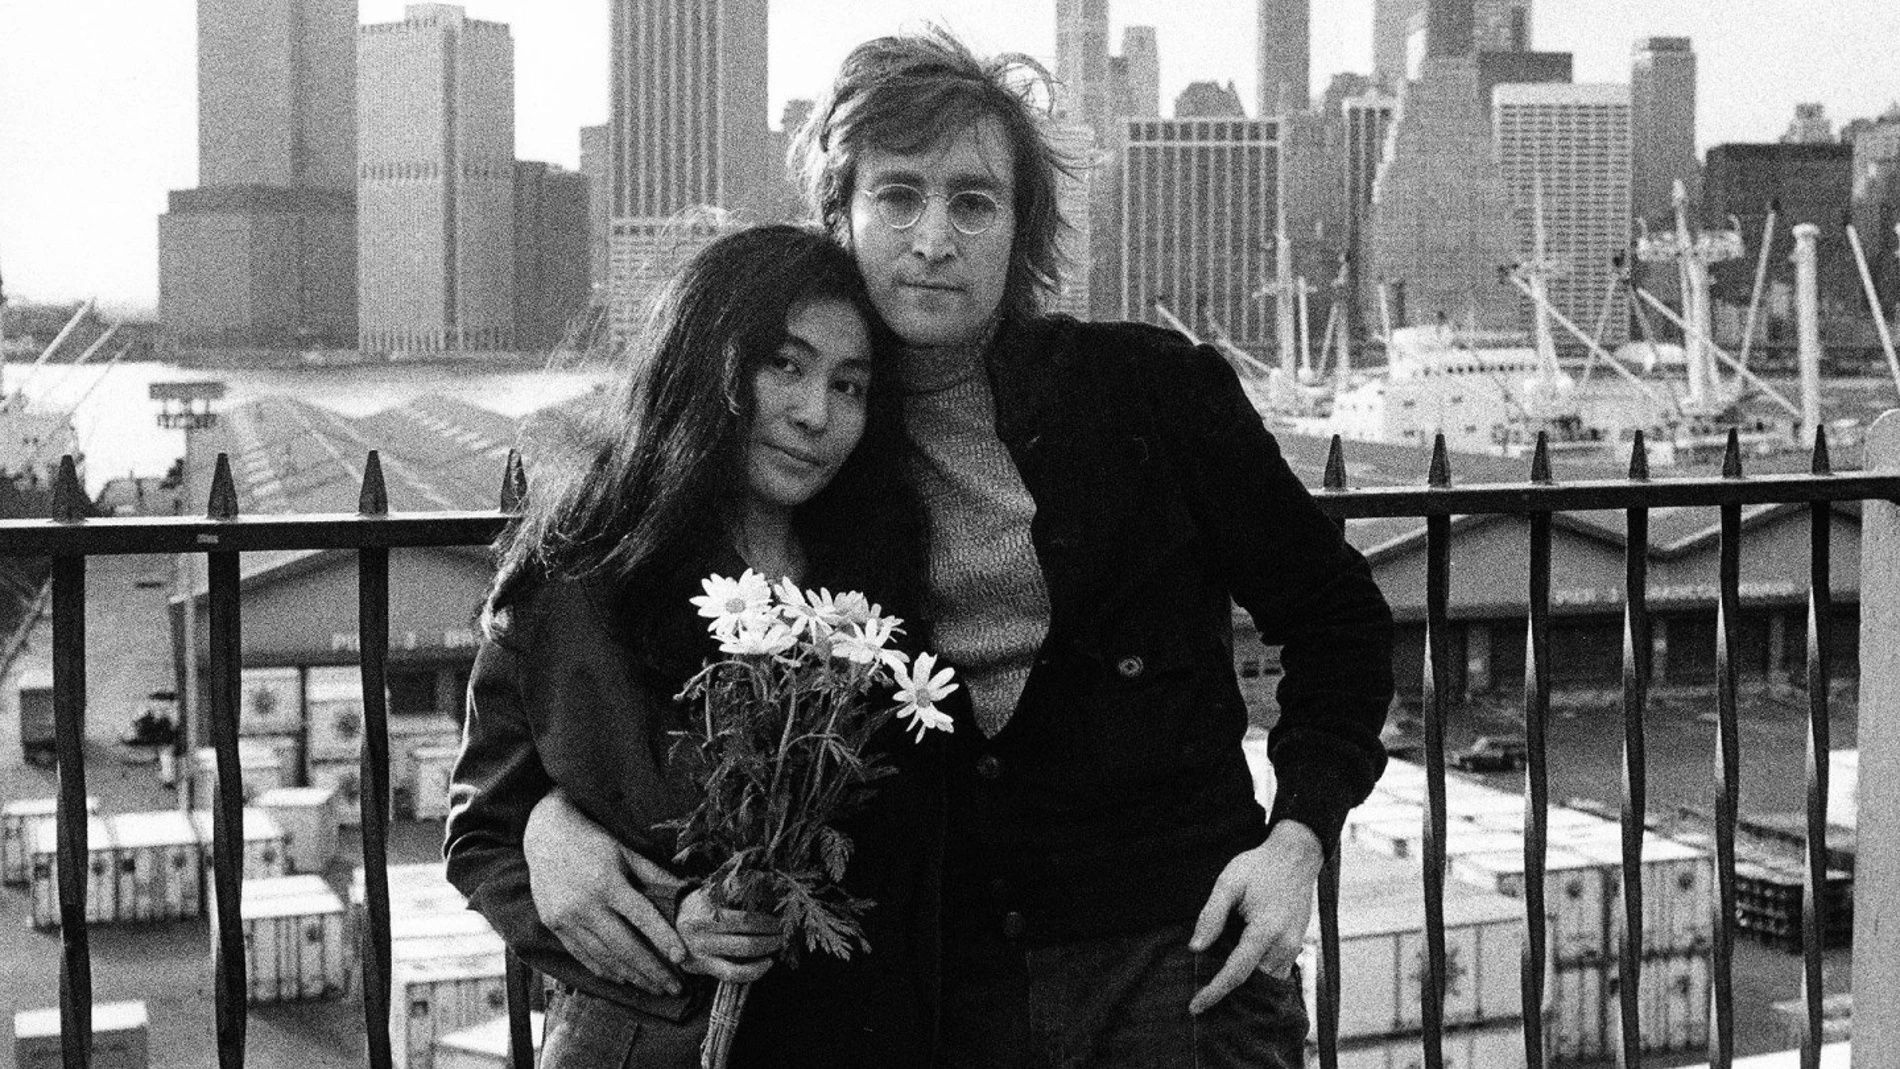  Fotograma cedido por el Servicio Público de Radiofusión (PBS) donde aparecen John Lennon y Yoko Ono posando en Nueva York, durante una escena del documental Lennon NYC de la serie American Masters. 